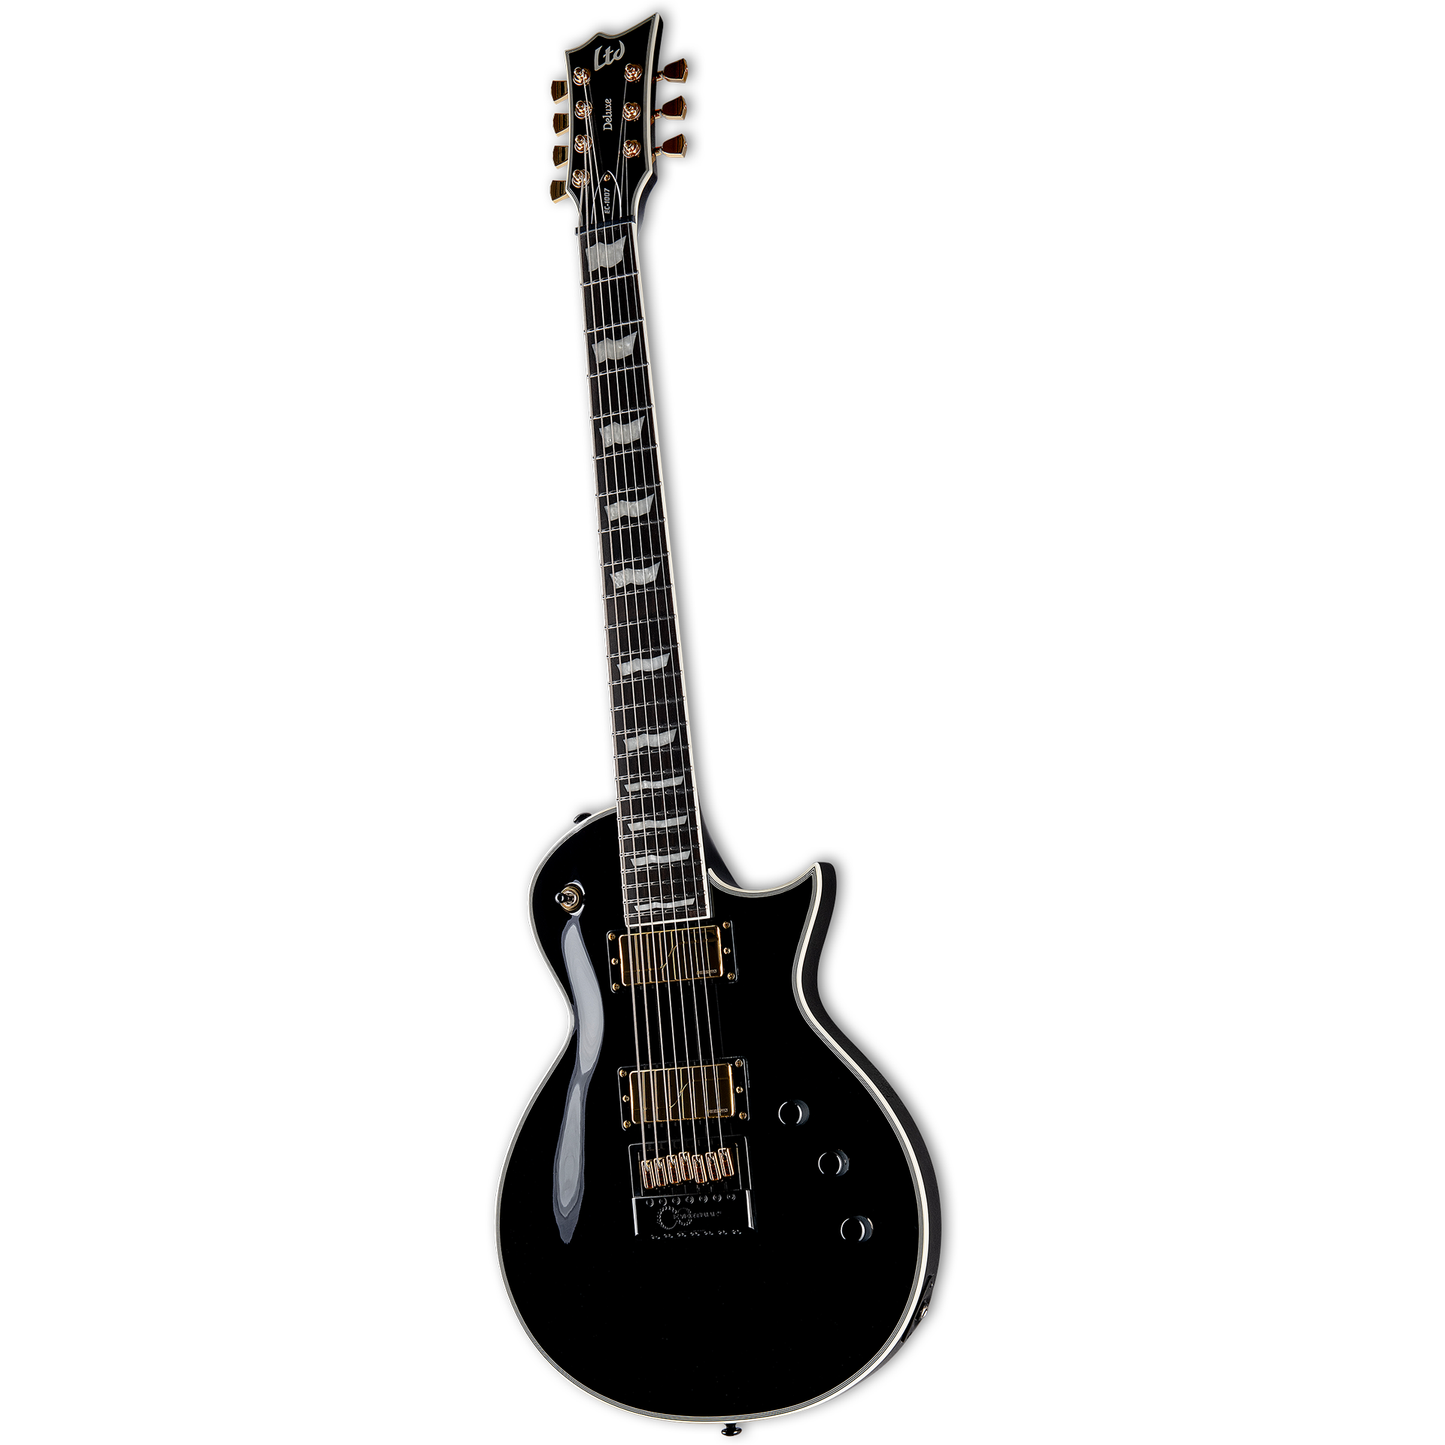 ESP LTD EC-1007 Baritone Evertune Electric Guitar - Black